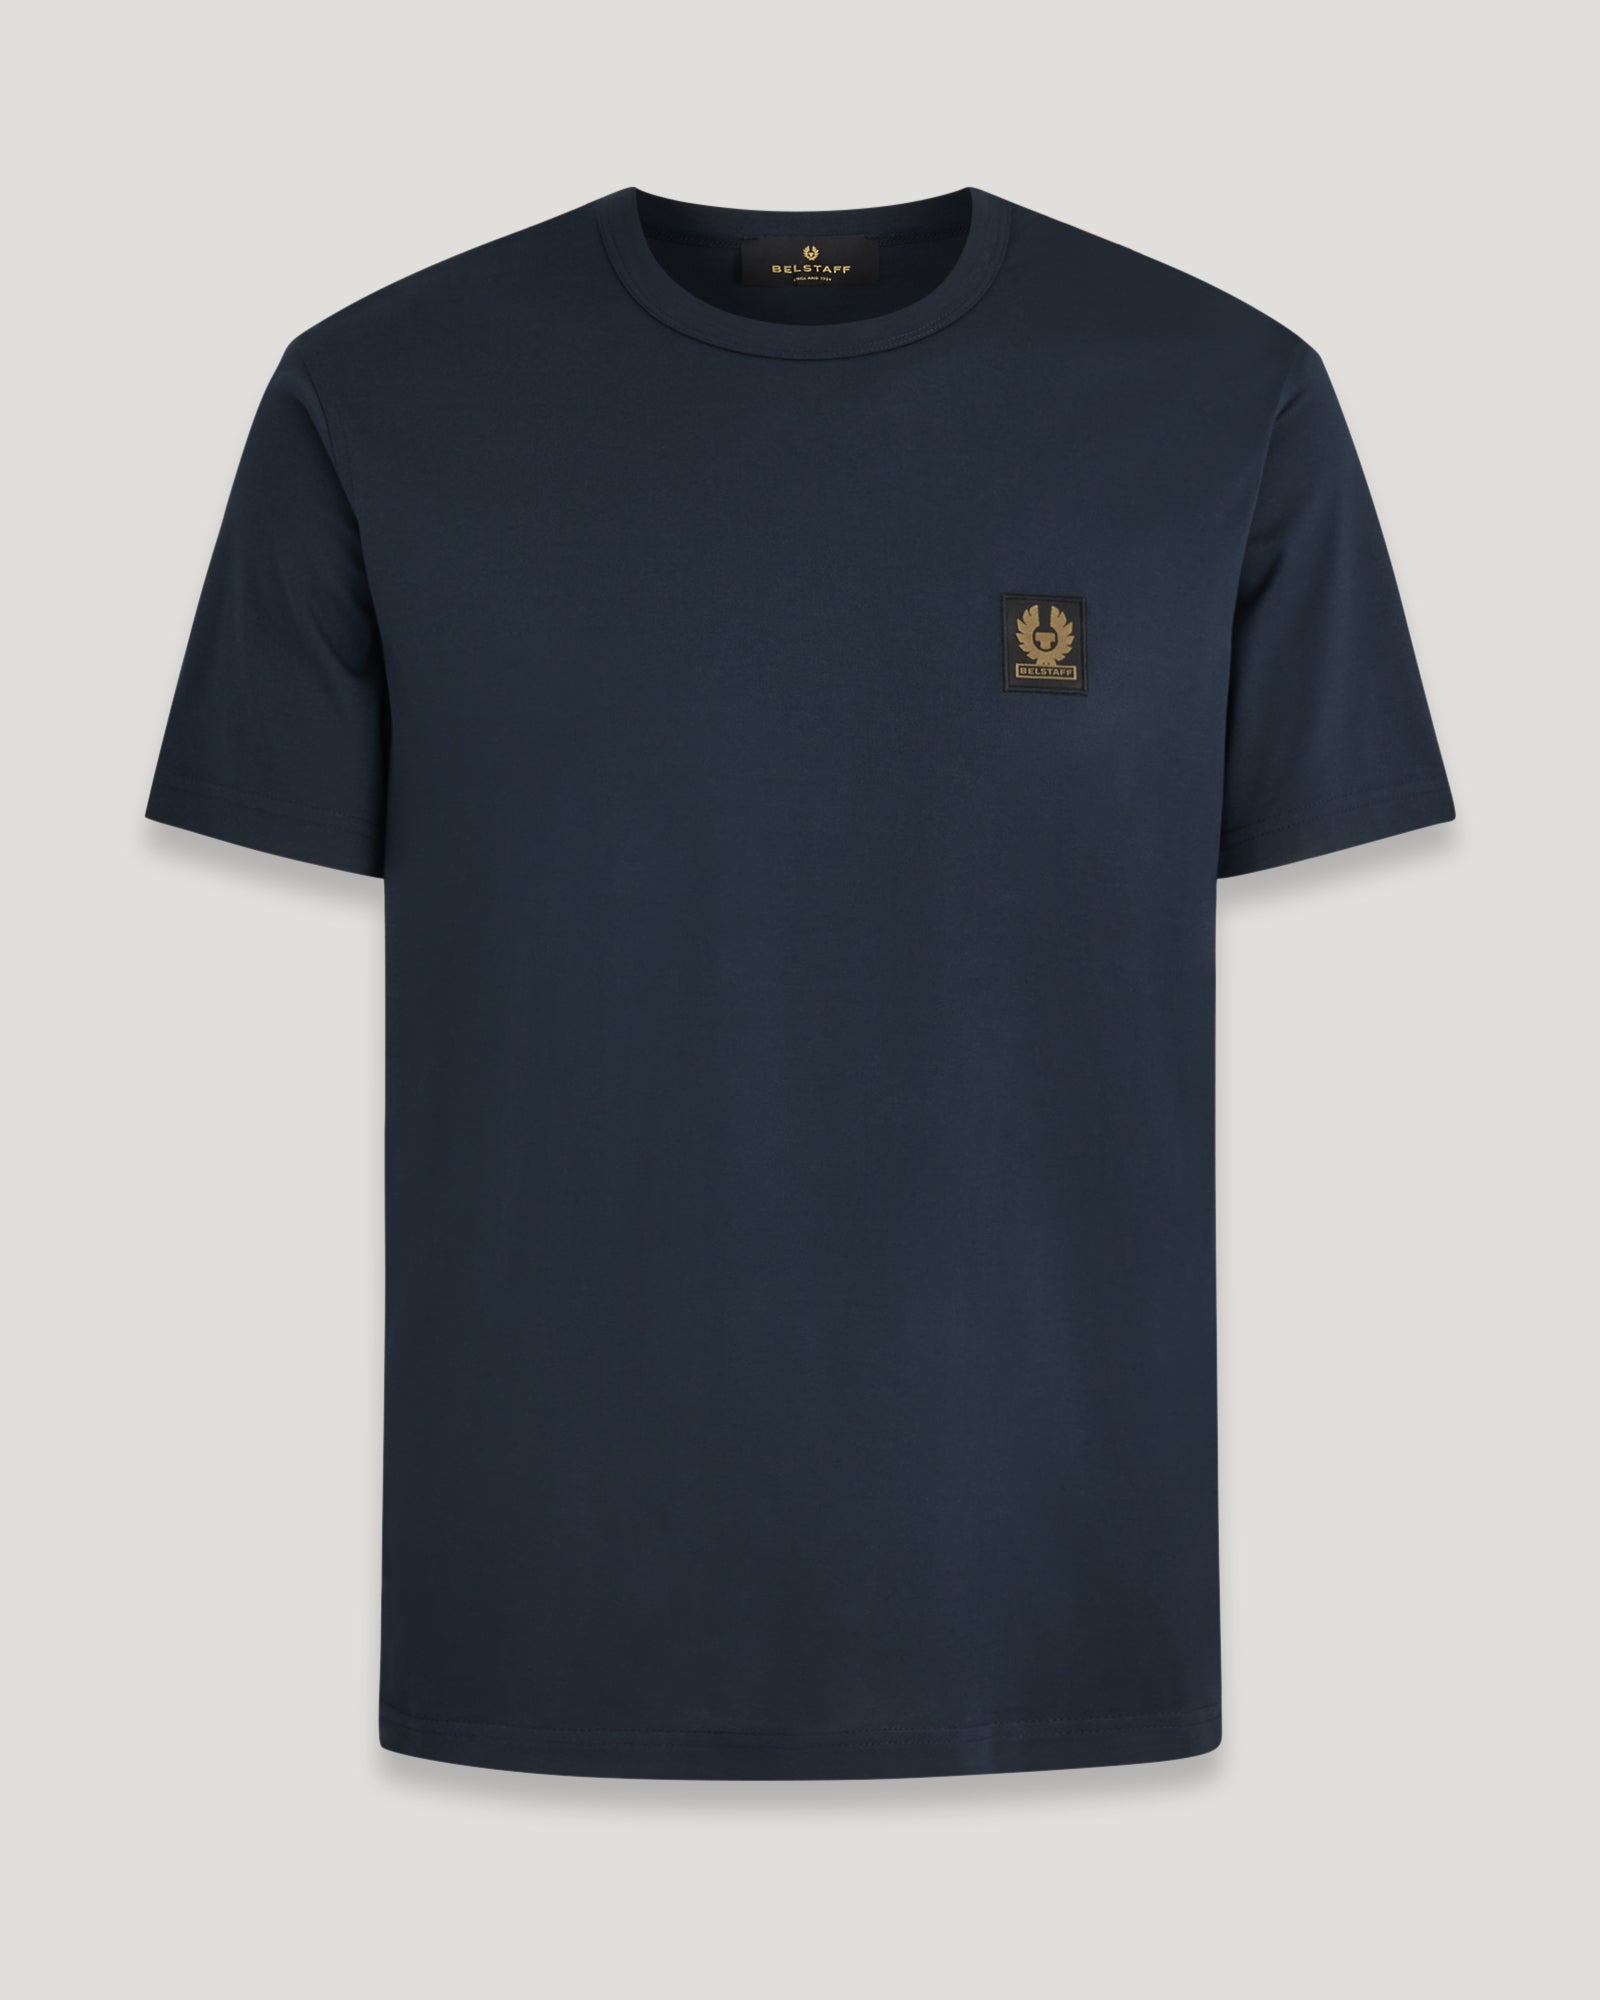 Men's Cotton Jersey Belstaff T-Shirt in Dark Ink | Belstaff UK